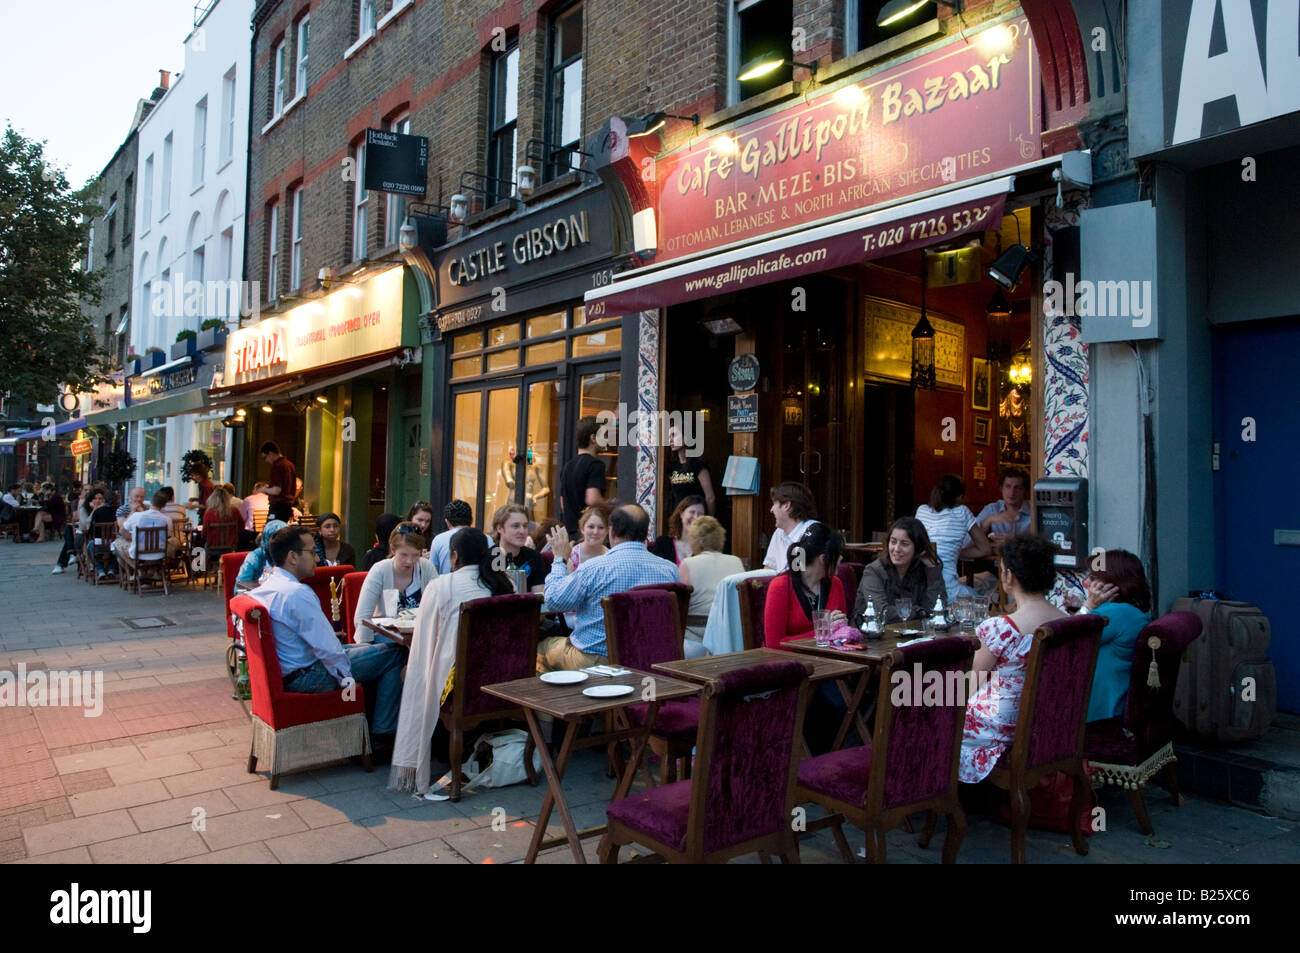 Cafe Gallipoli Bazaar Turkish restaurant on Upper Street, Islington, London, UK Stock Photo